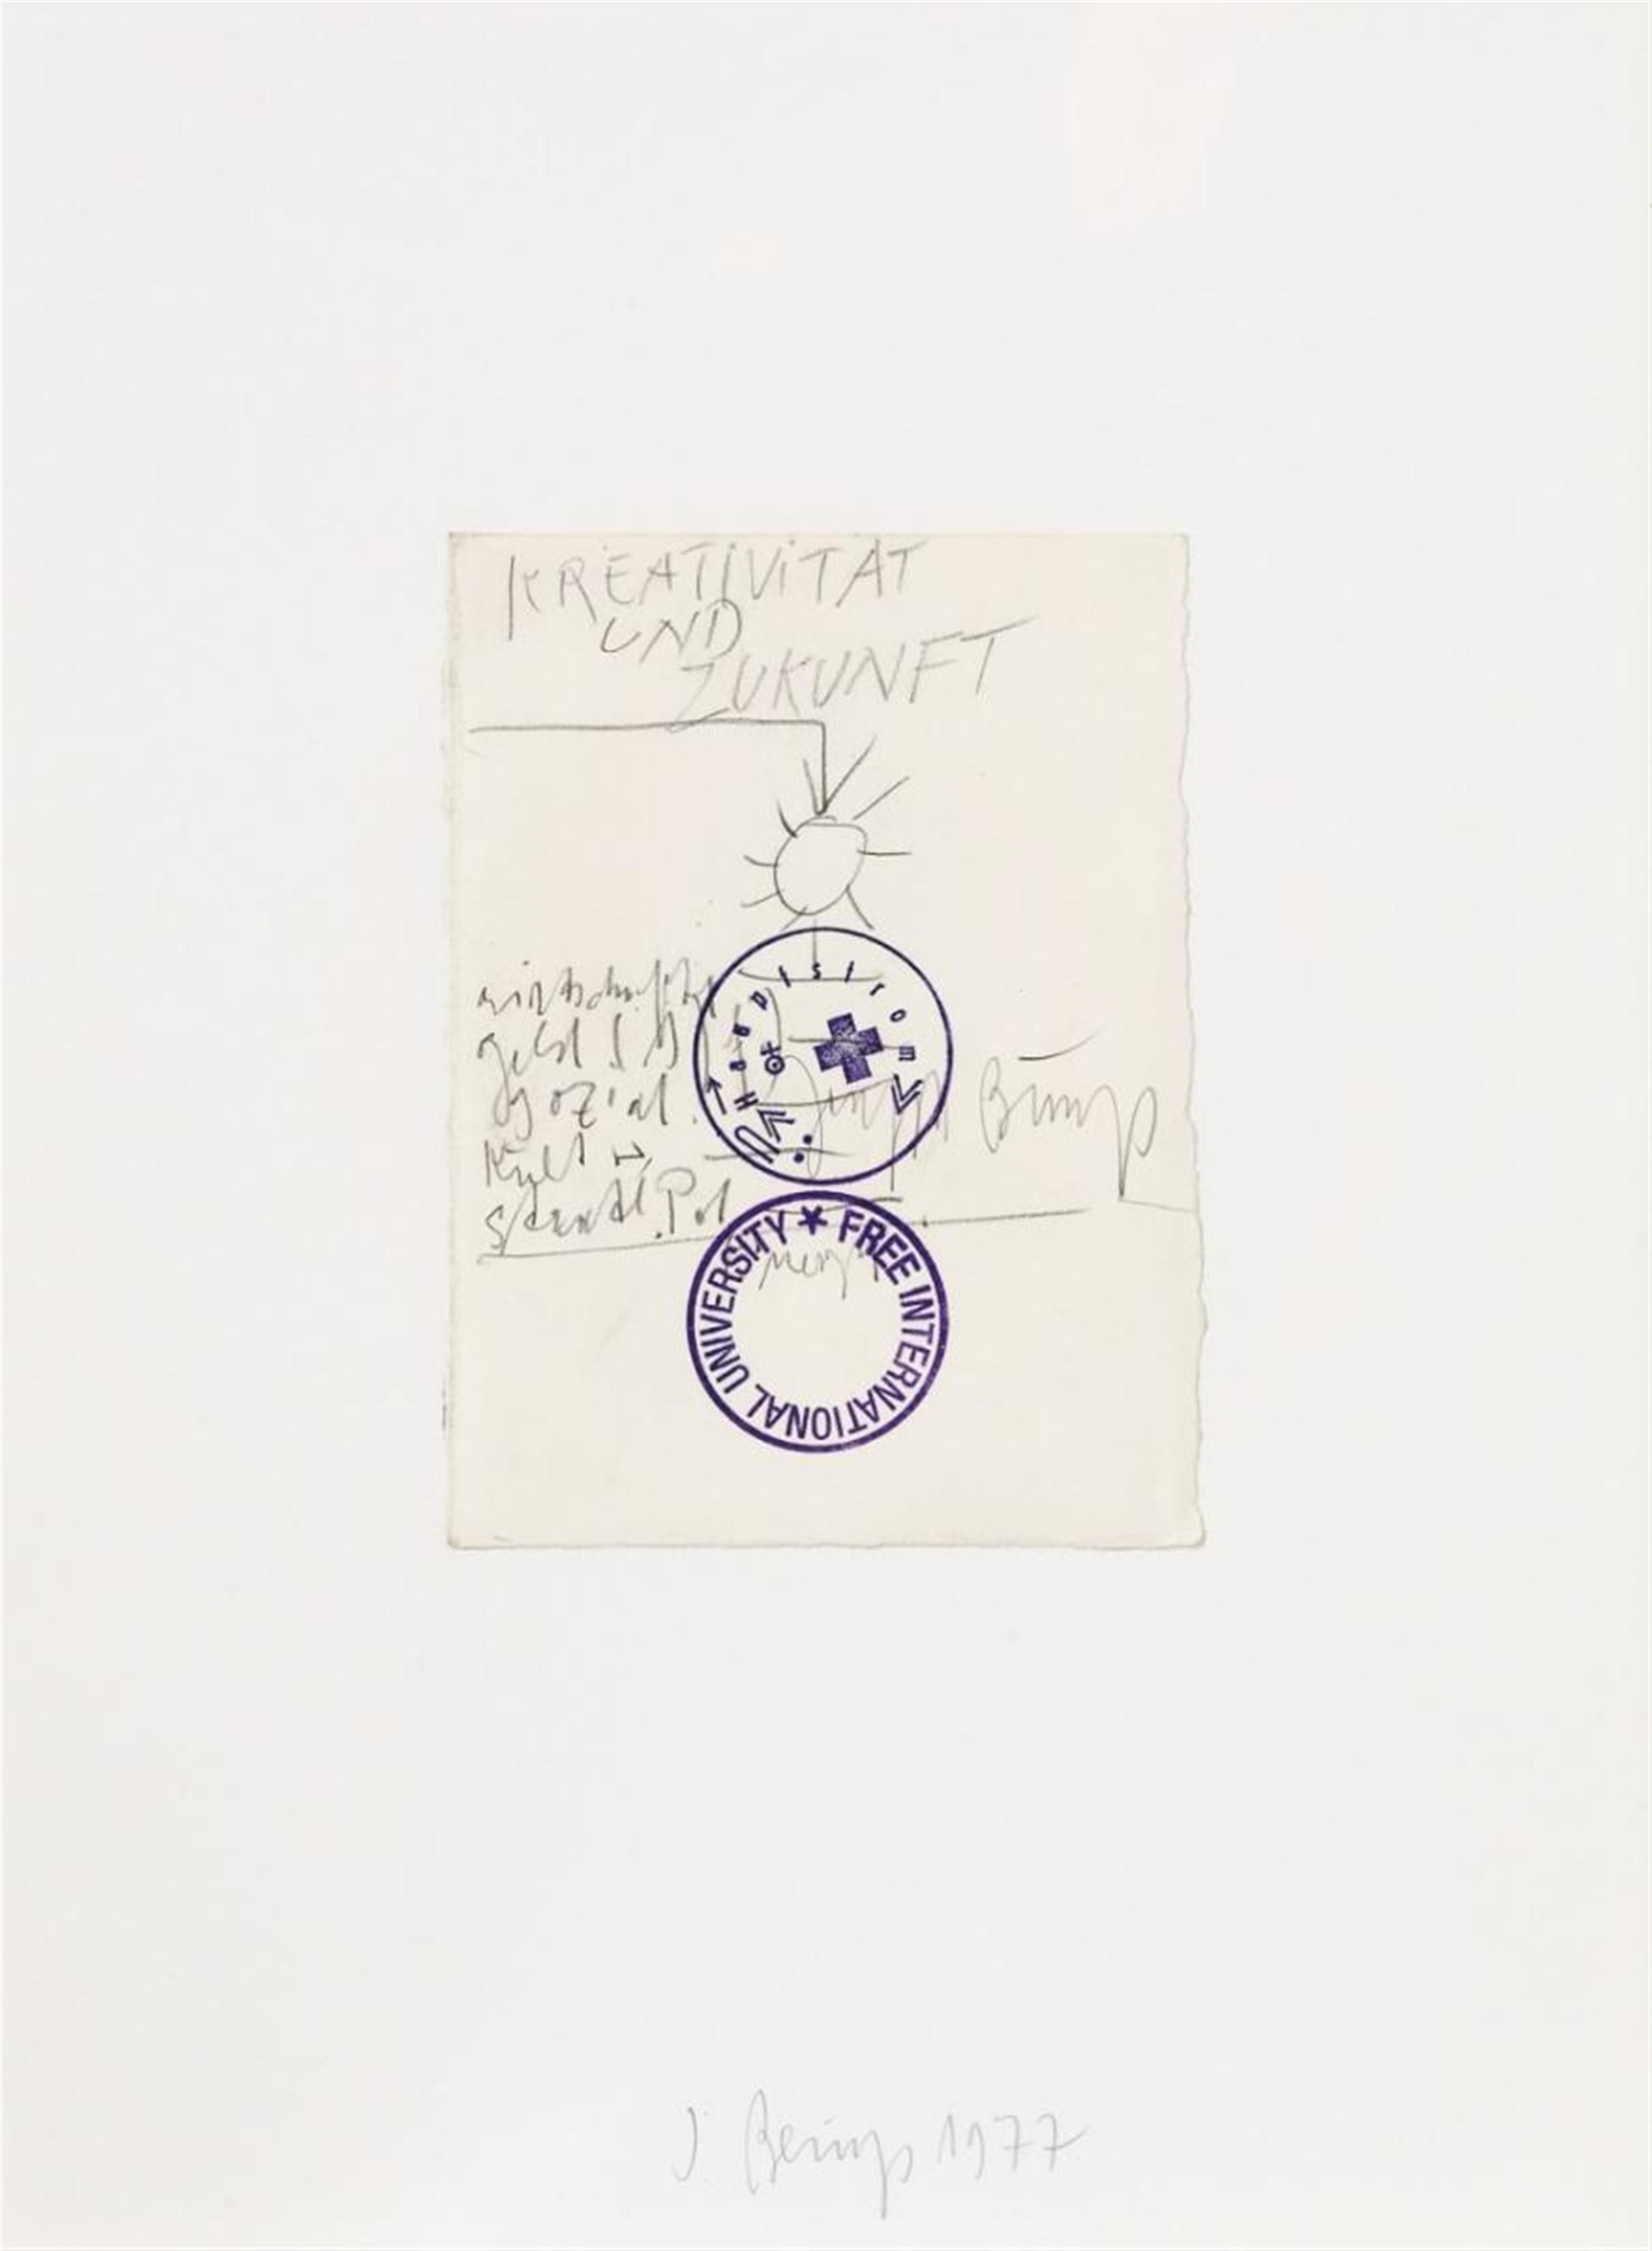 Joseph Beuys - Kreativität und Zukunft - image-1